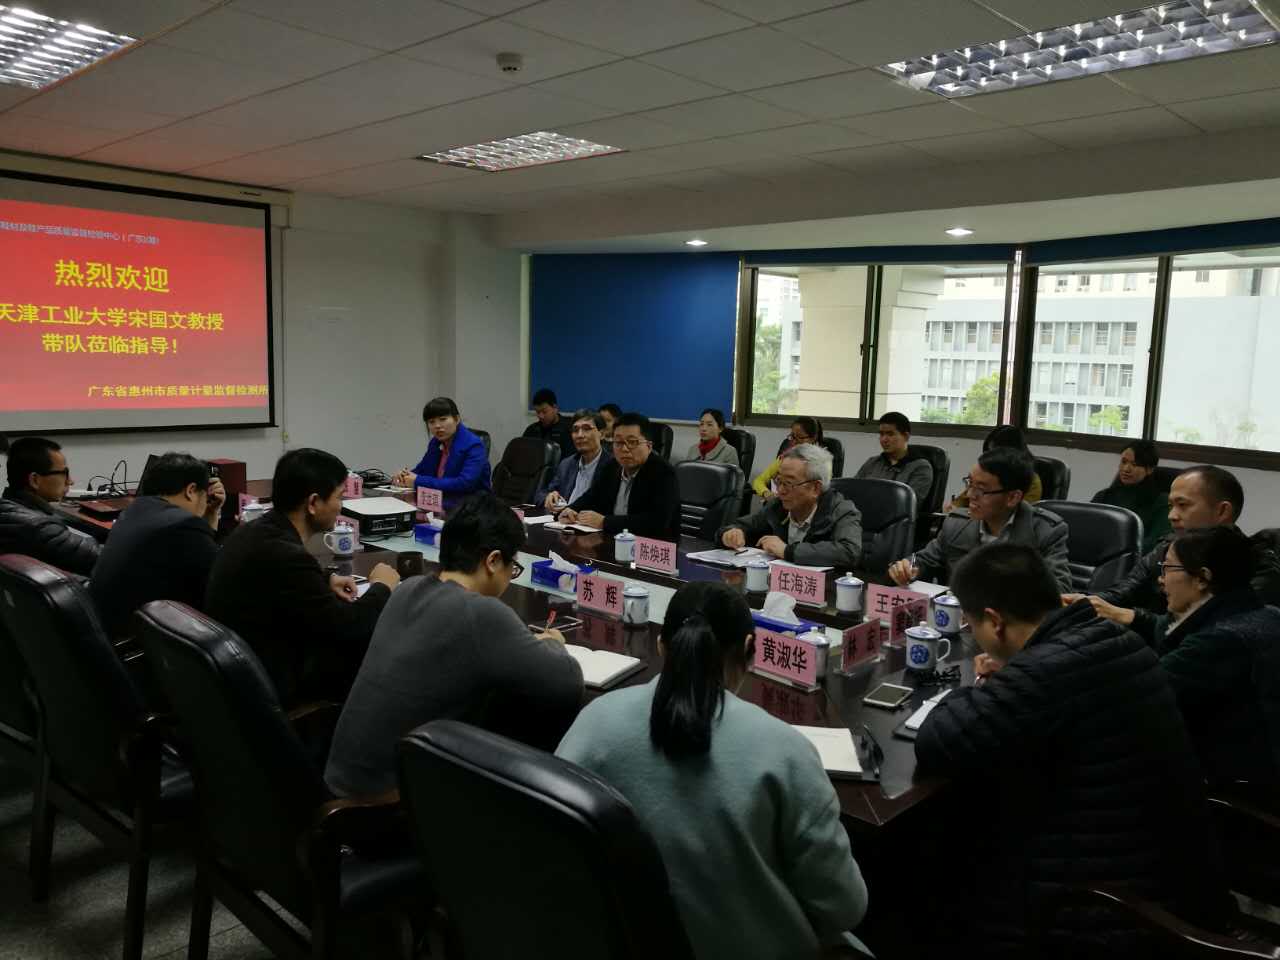 天津工业大学宋国文教授带领其科研团队到质计所参观交流